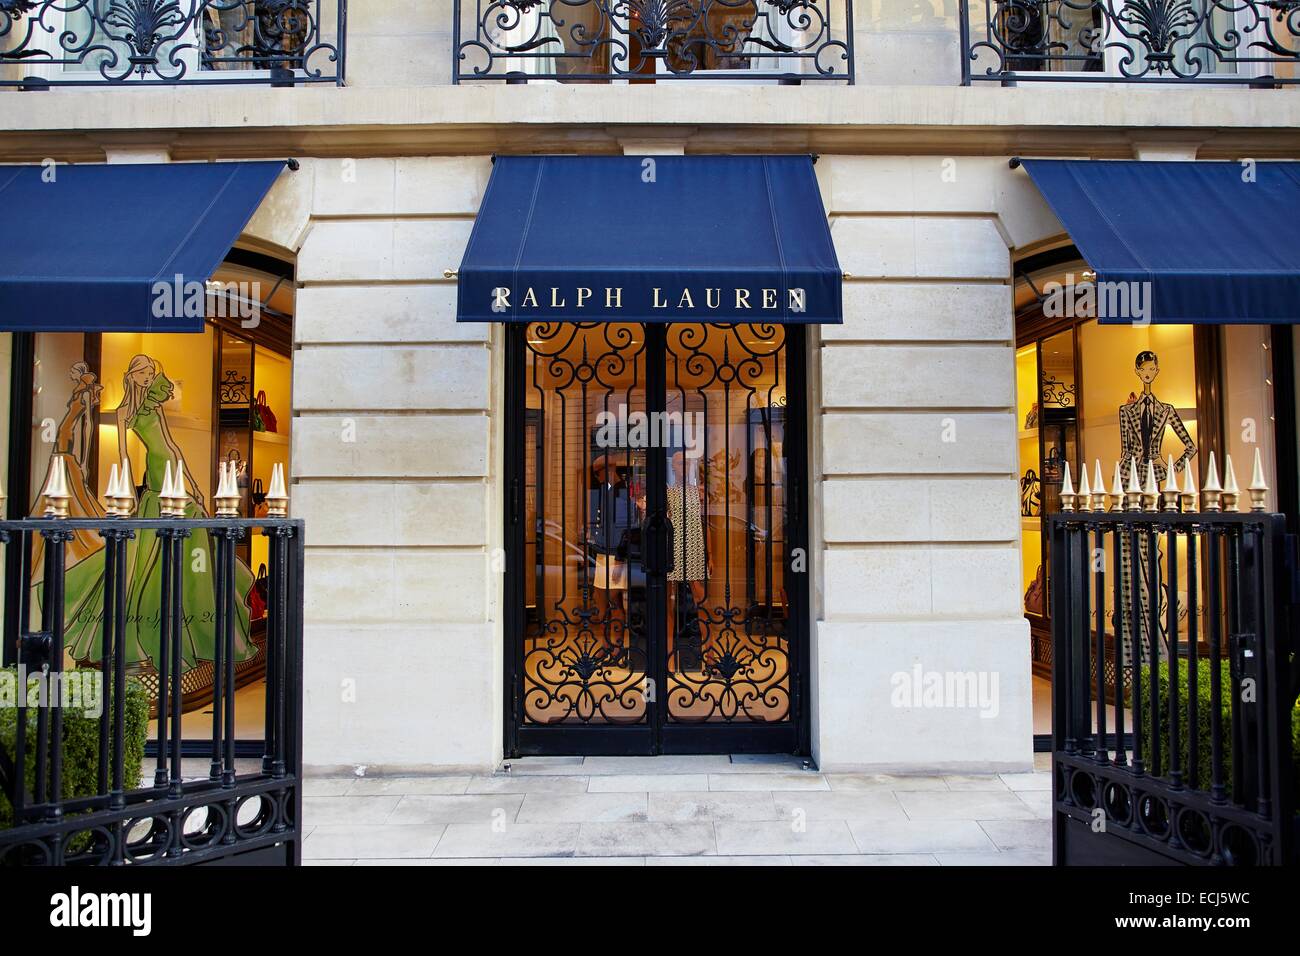 France, Paris, Luxury shops on Montaigne Avenue, Ralph Lauren Stock ...